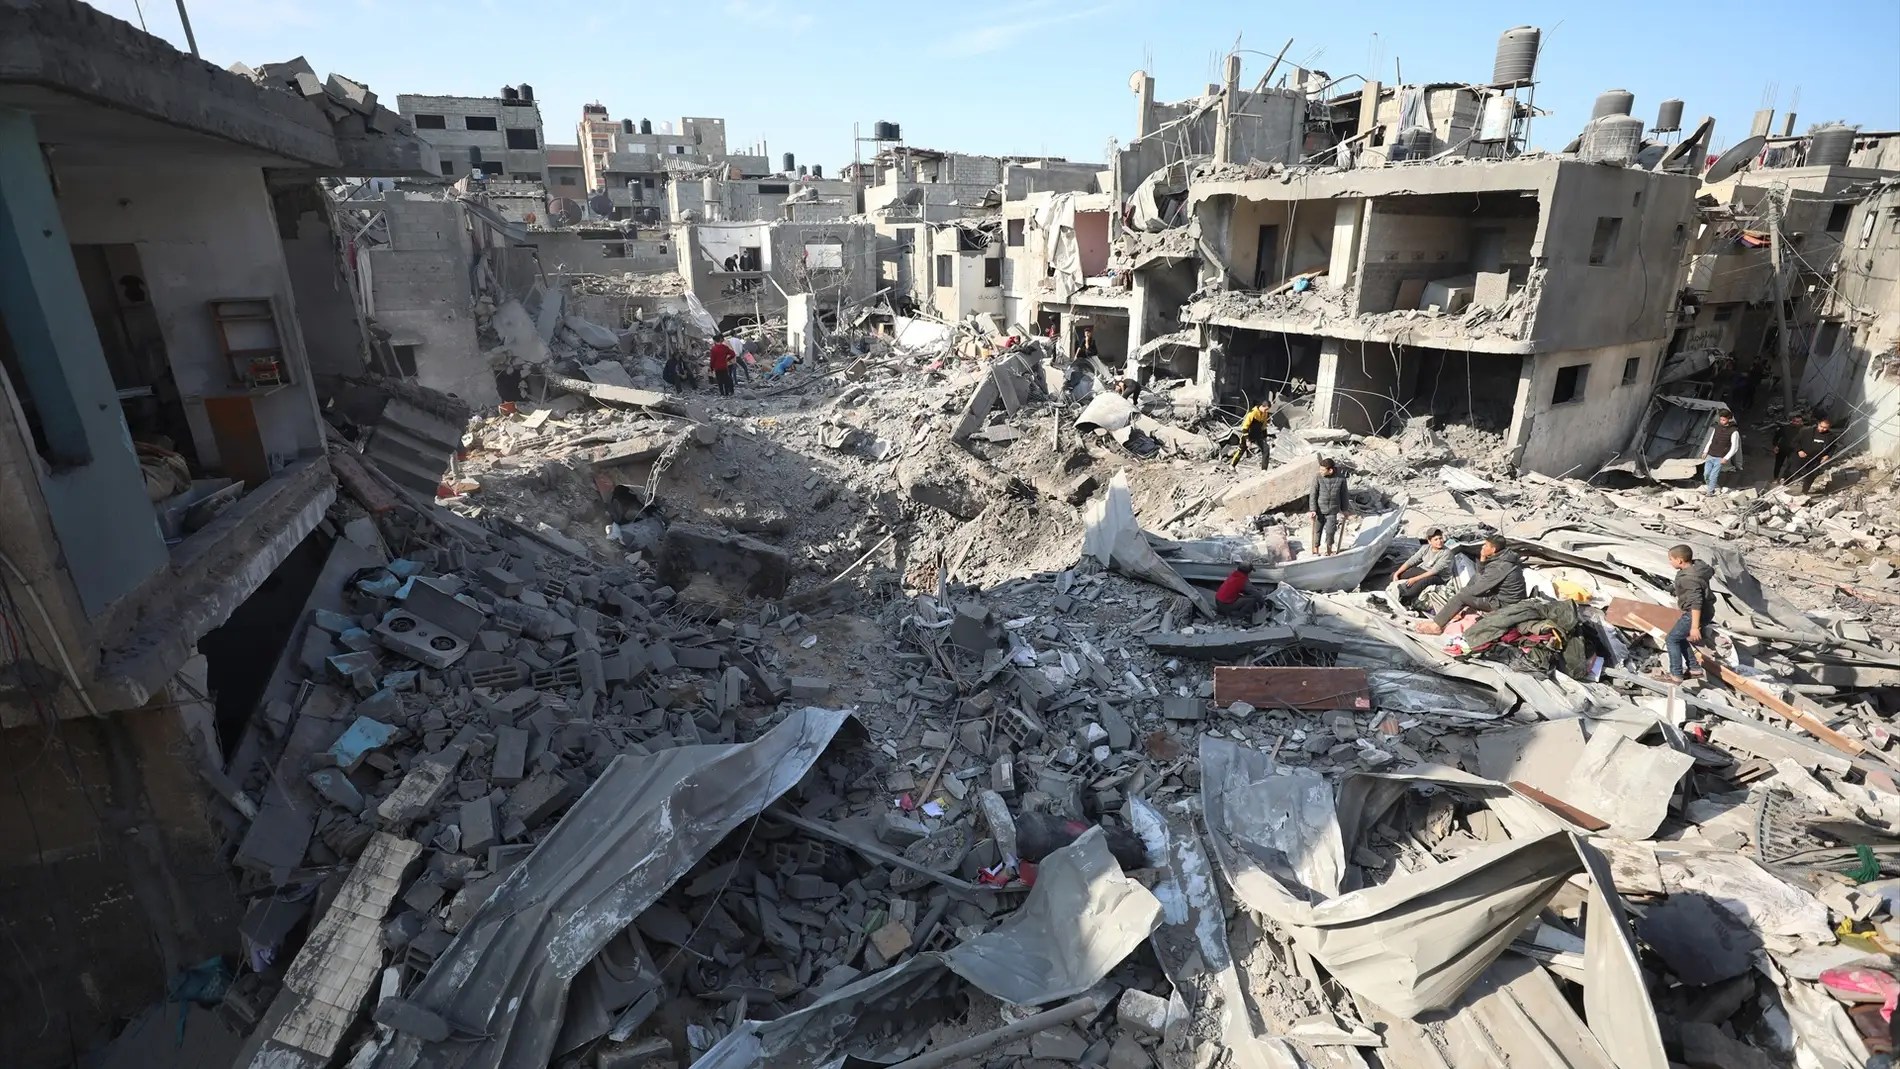 Gaza “ya no es un lugar habitable”, sólo queda miseria y dolor, aseguró la ONU